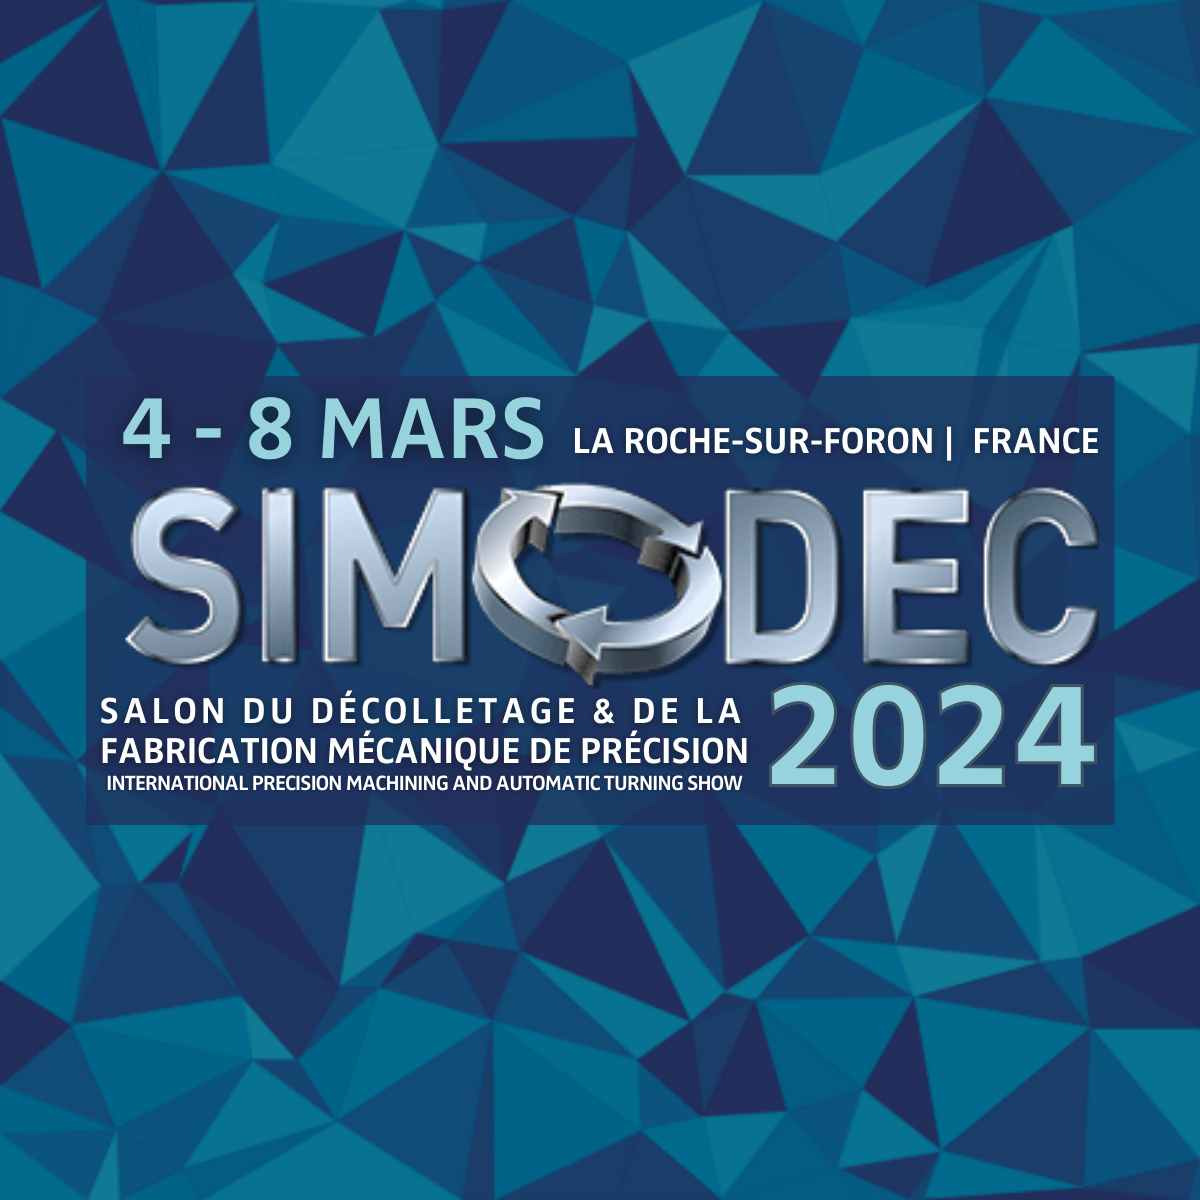 Simodec 2024 – Le rendez-vous des professionnels de l’industrie mécanique de précision.